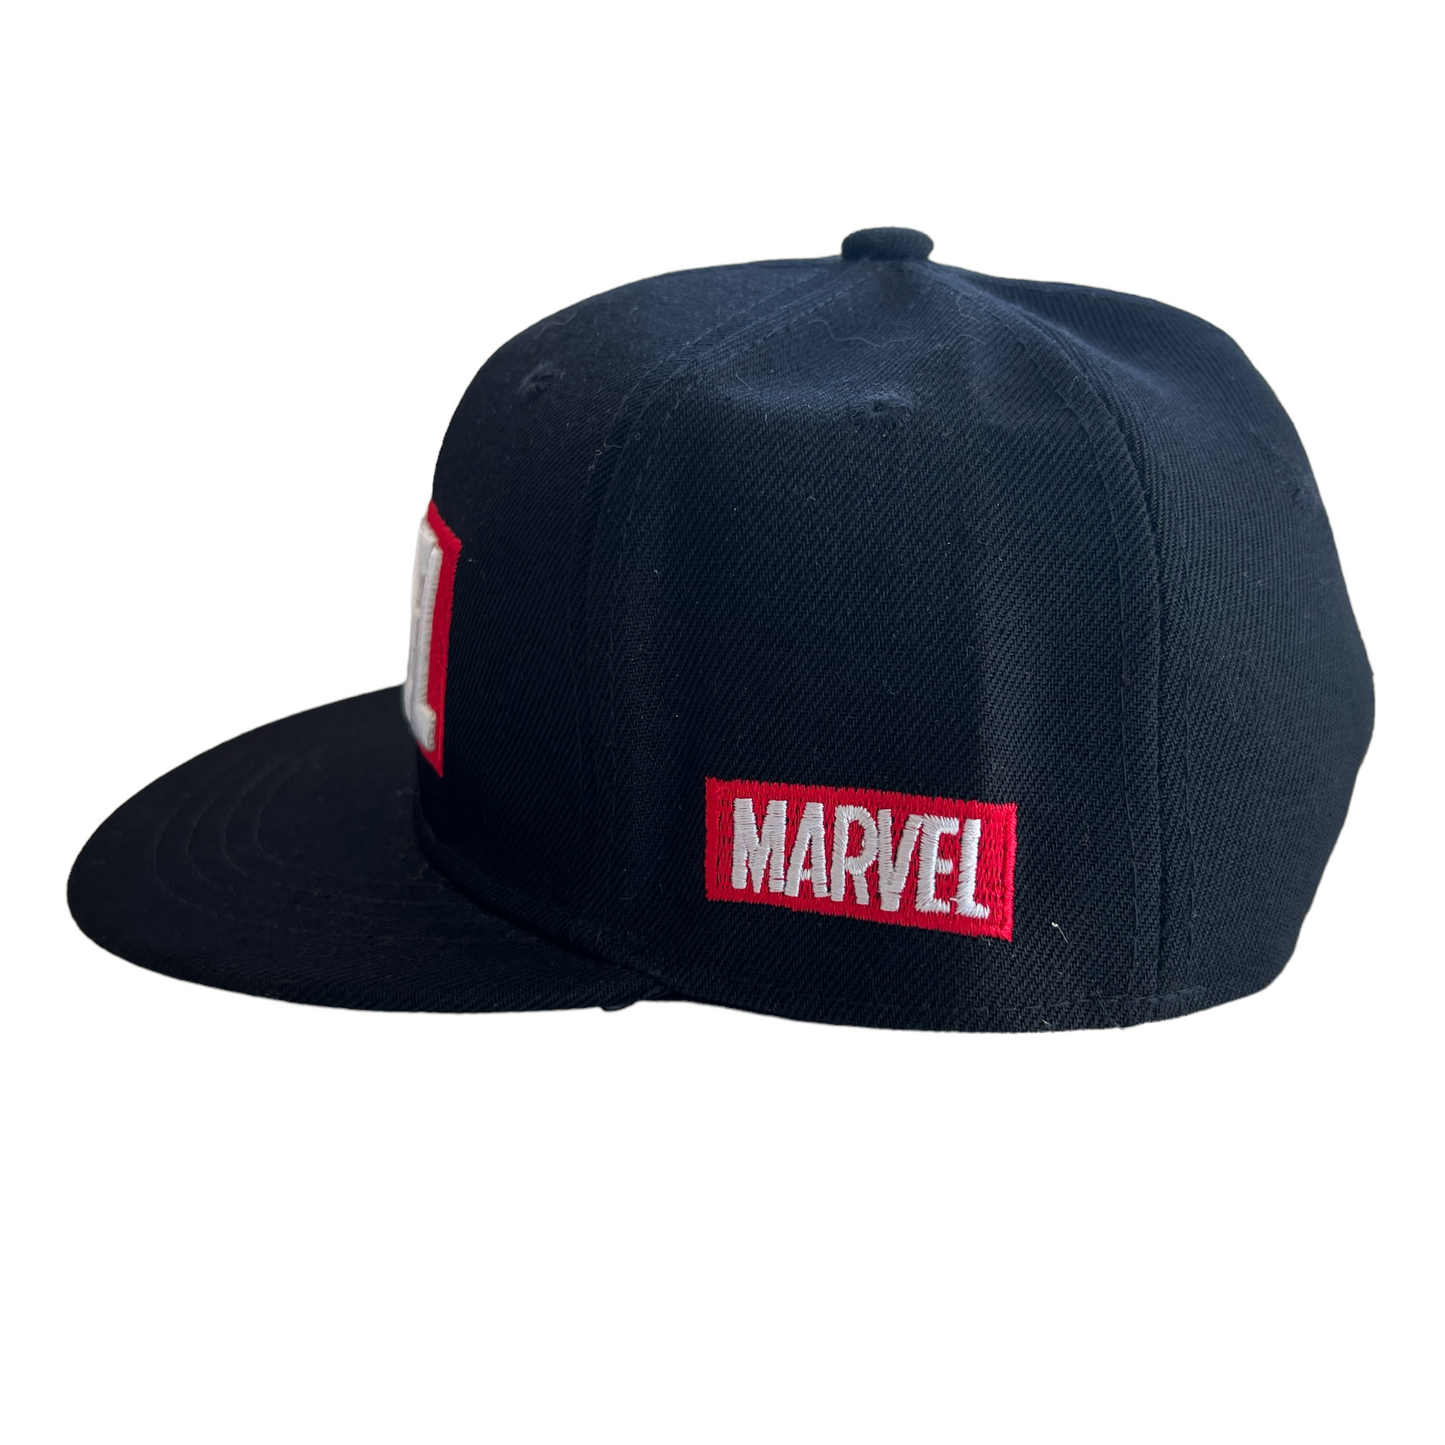 Marvel Series Hats  SPIRIT SPARKPLUGS   